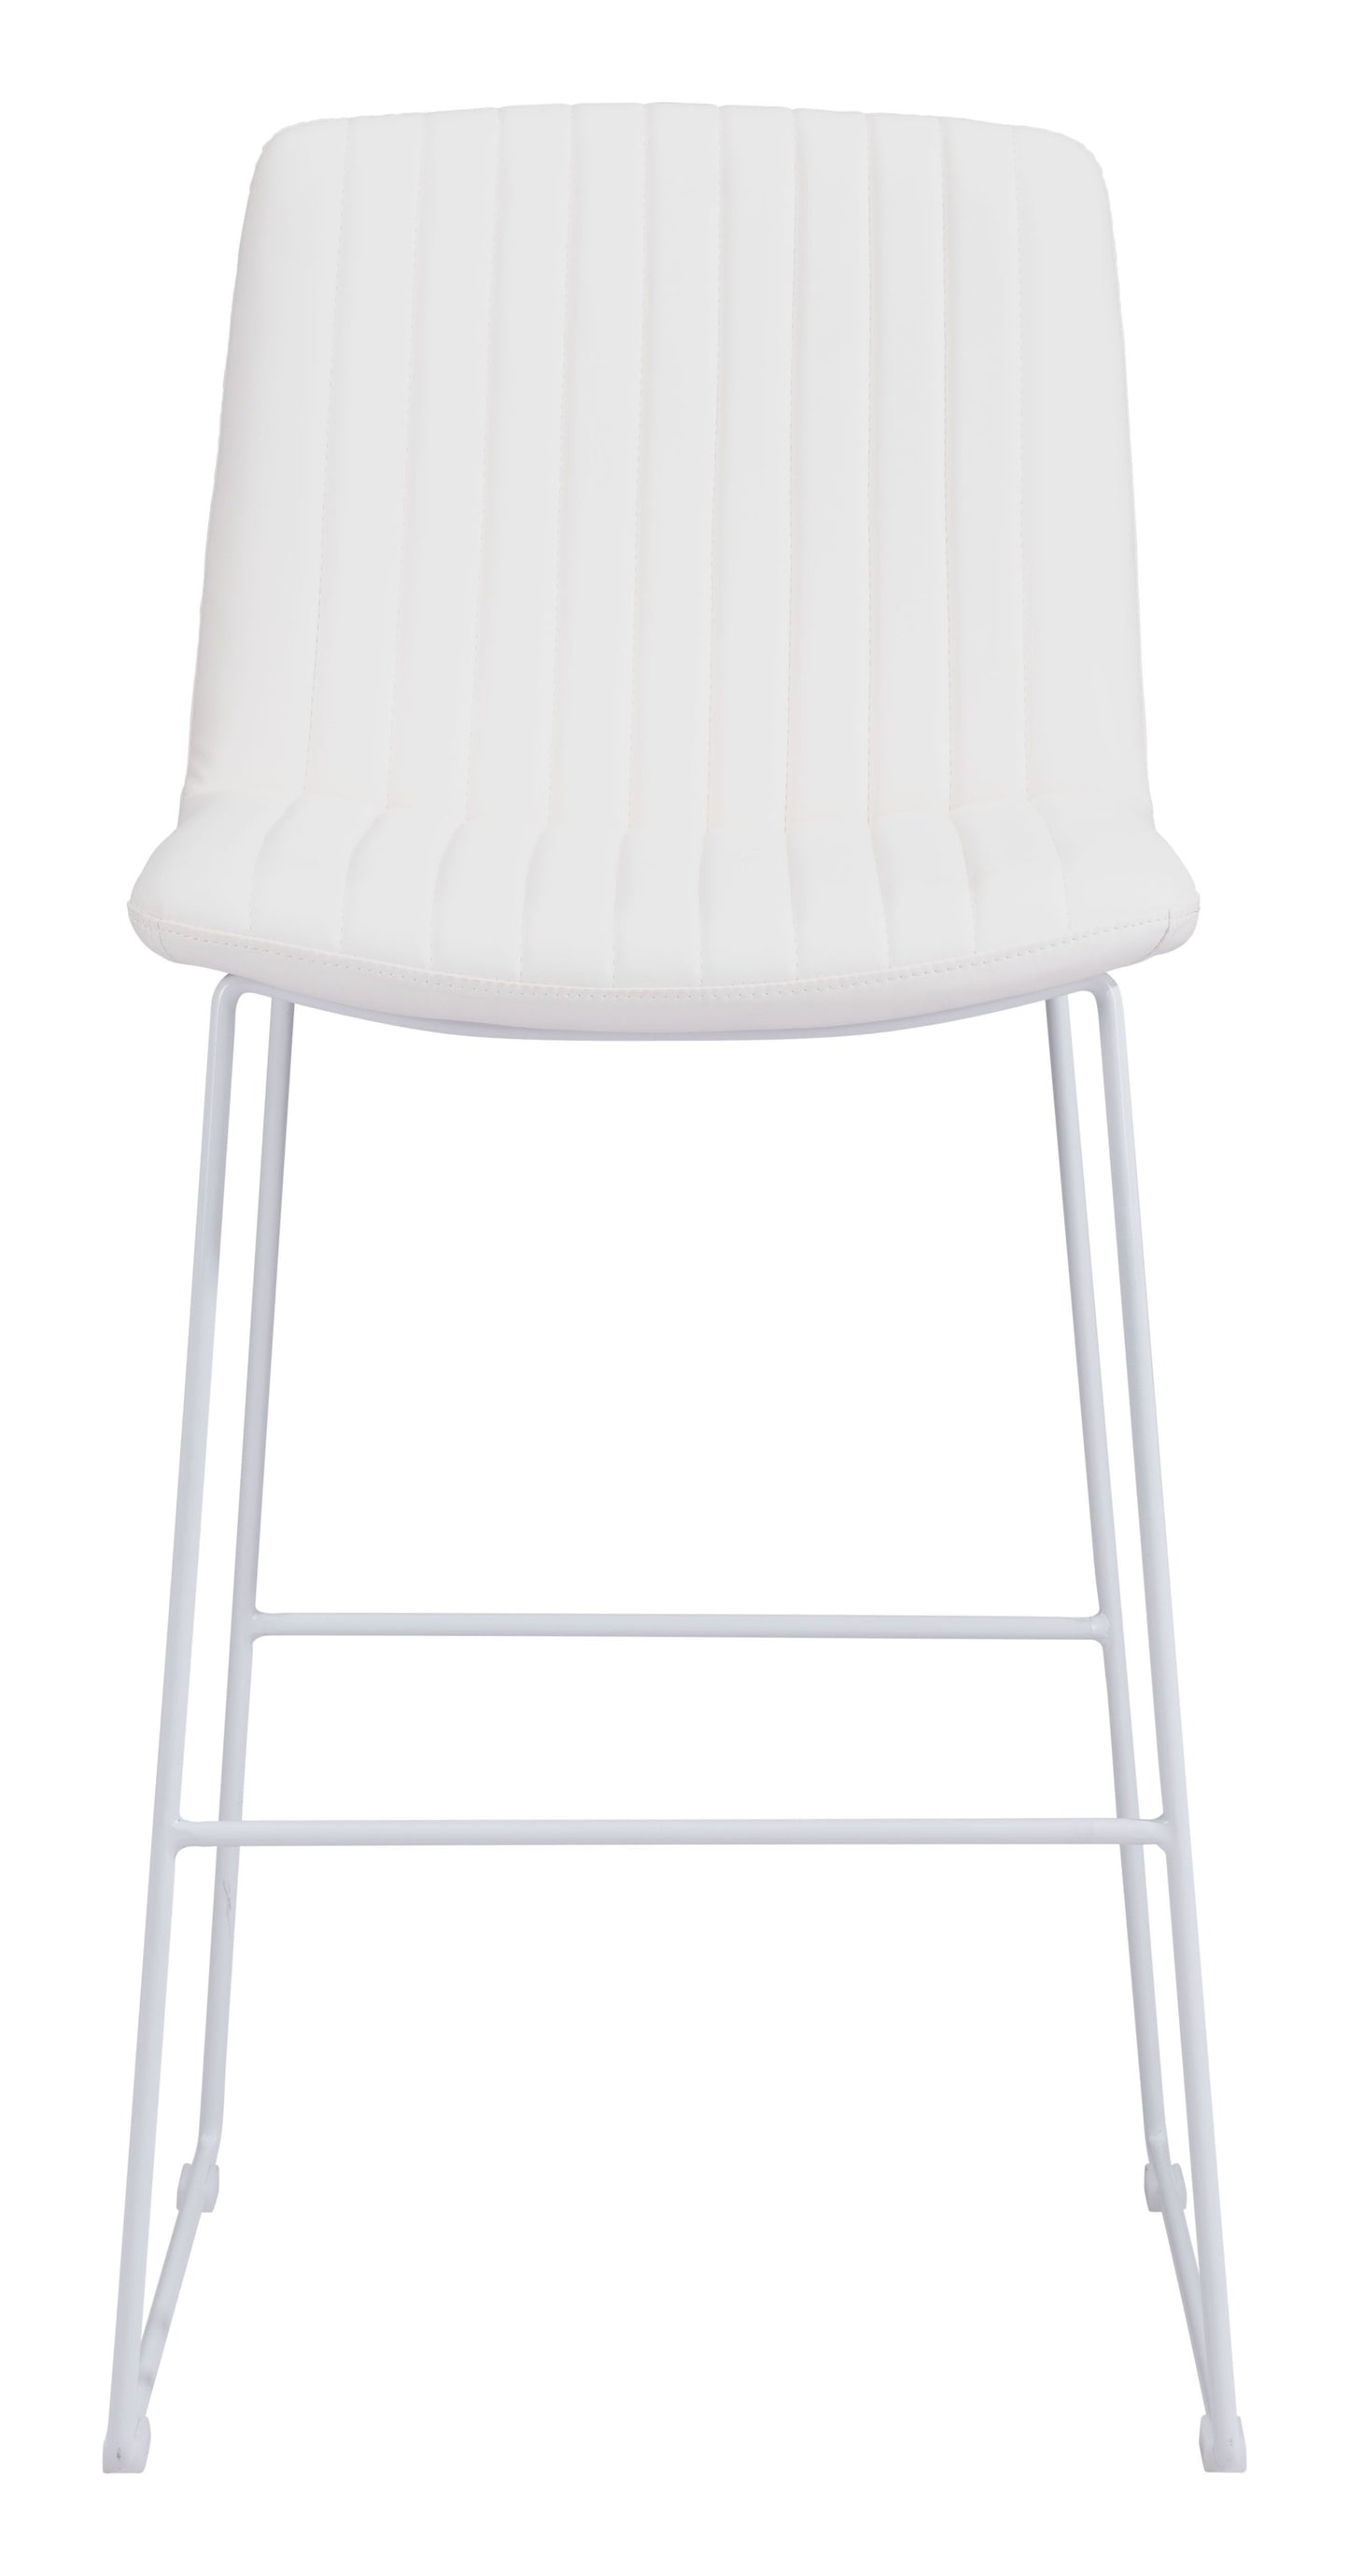 Mode Bar Chair White